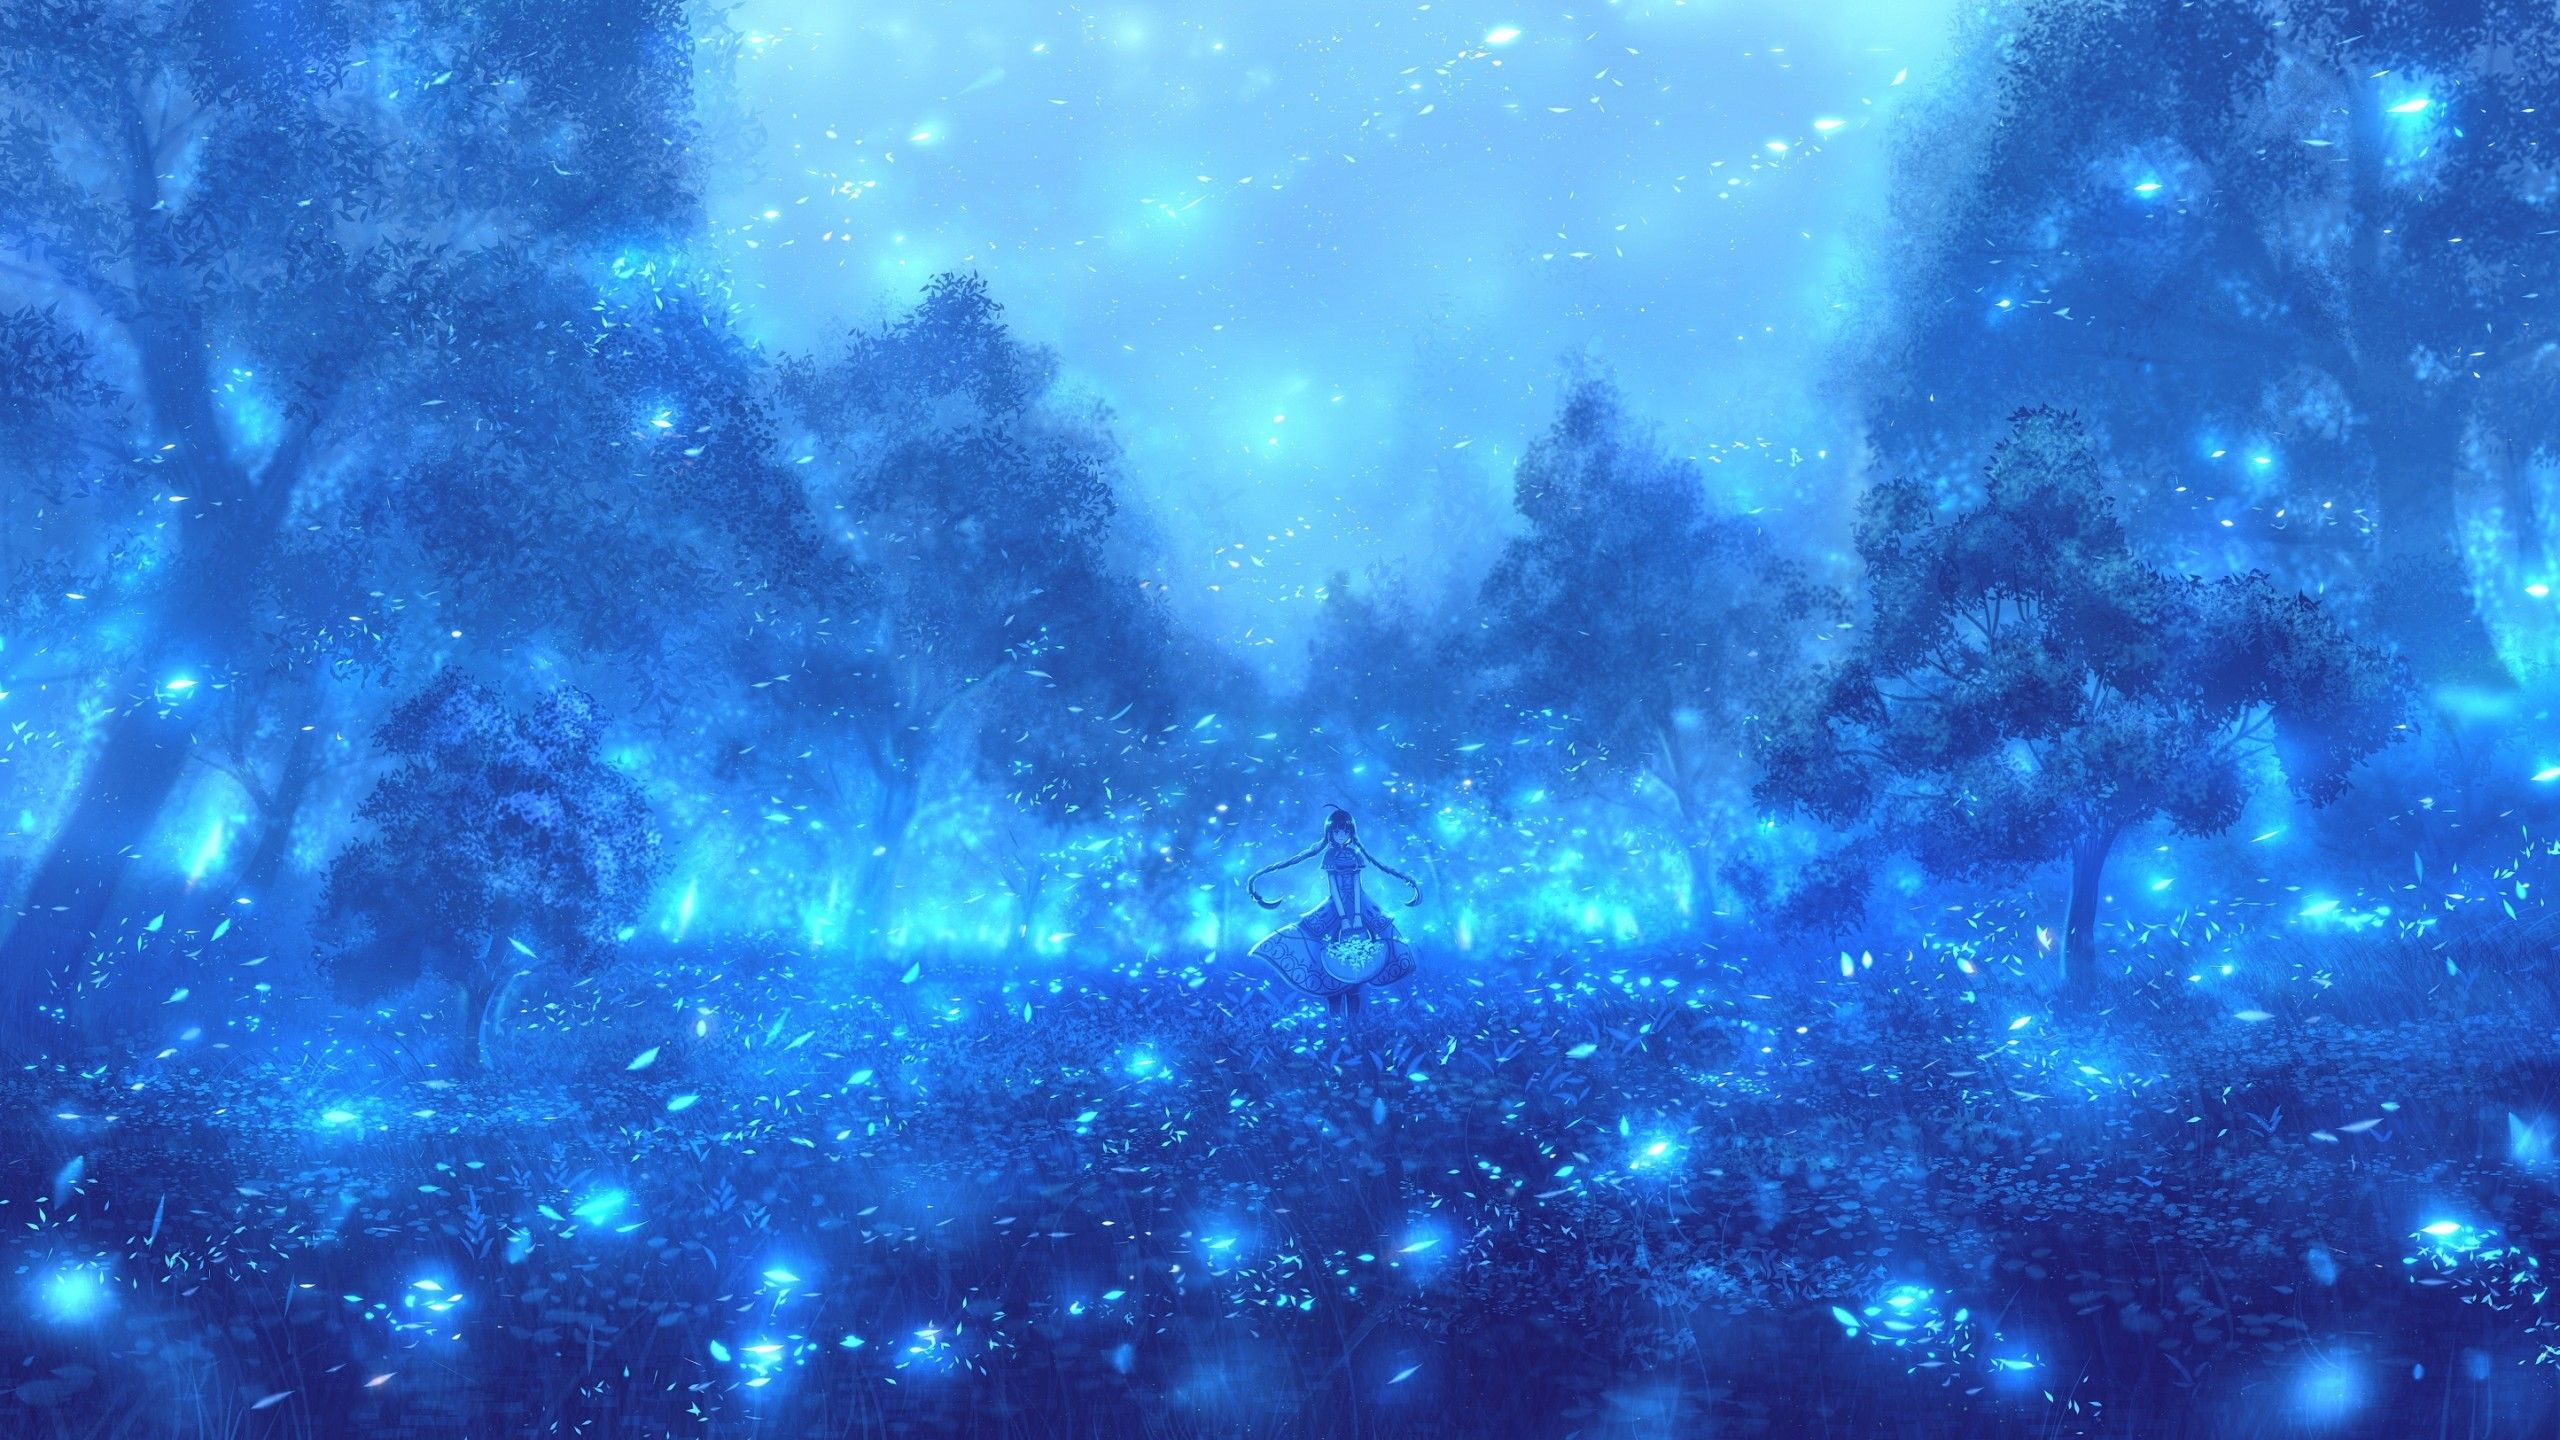 Lạc vào không gian huyền ảo với bộ sưu tập hình nền anime cảnh đẹp màu xanh da trời. Với những bức tranh đậm chất nghệ thuật về phong cảnh, nhân vật và không gian độc đáo, bạn sẽ cảm thấy như mình đang thực sự đắm mình trong một thế giới mới.